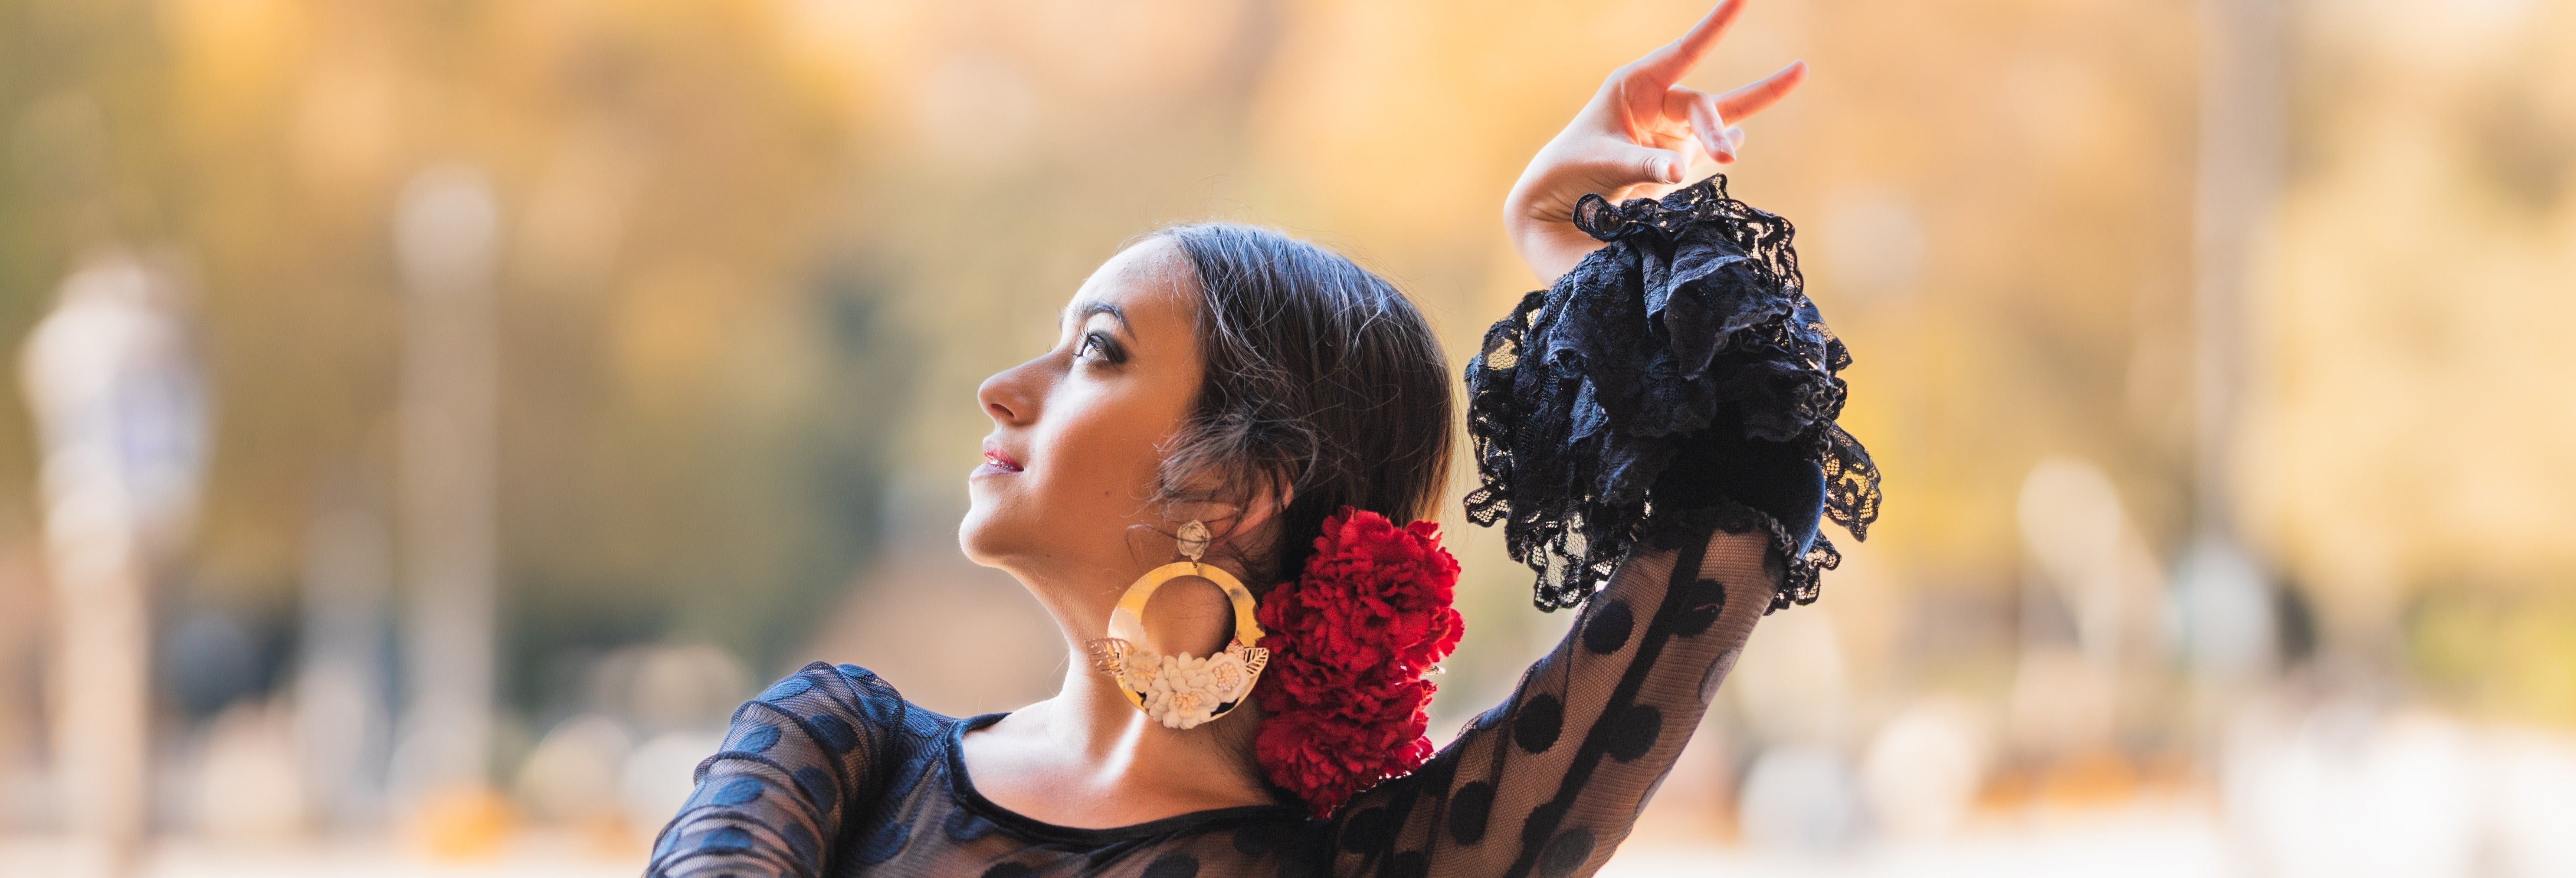 Seville Flamenco Dance Museum Show